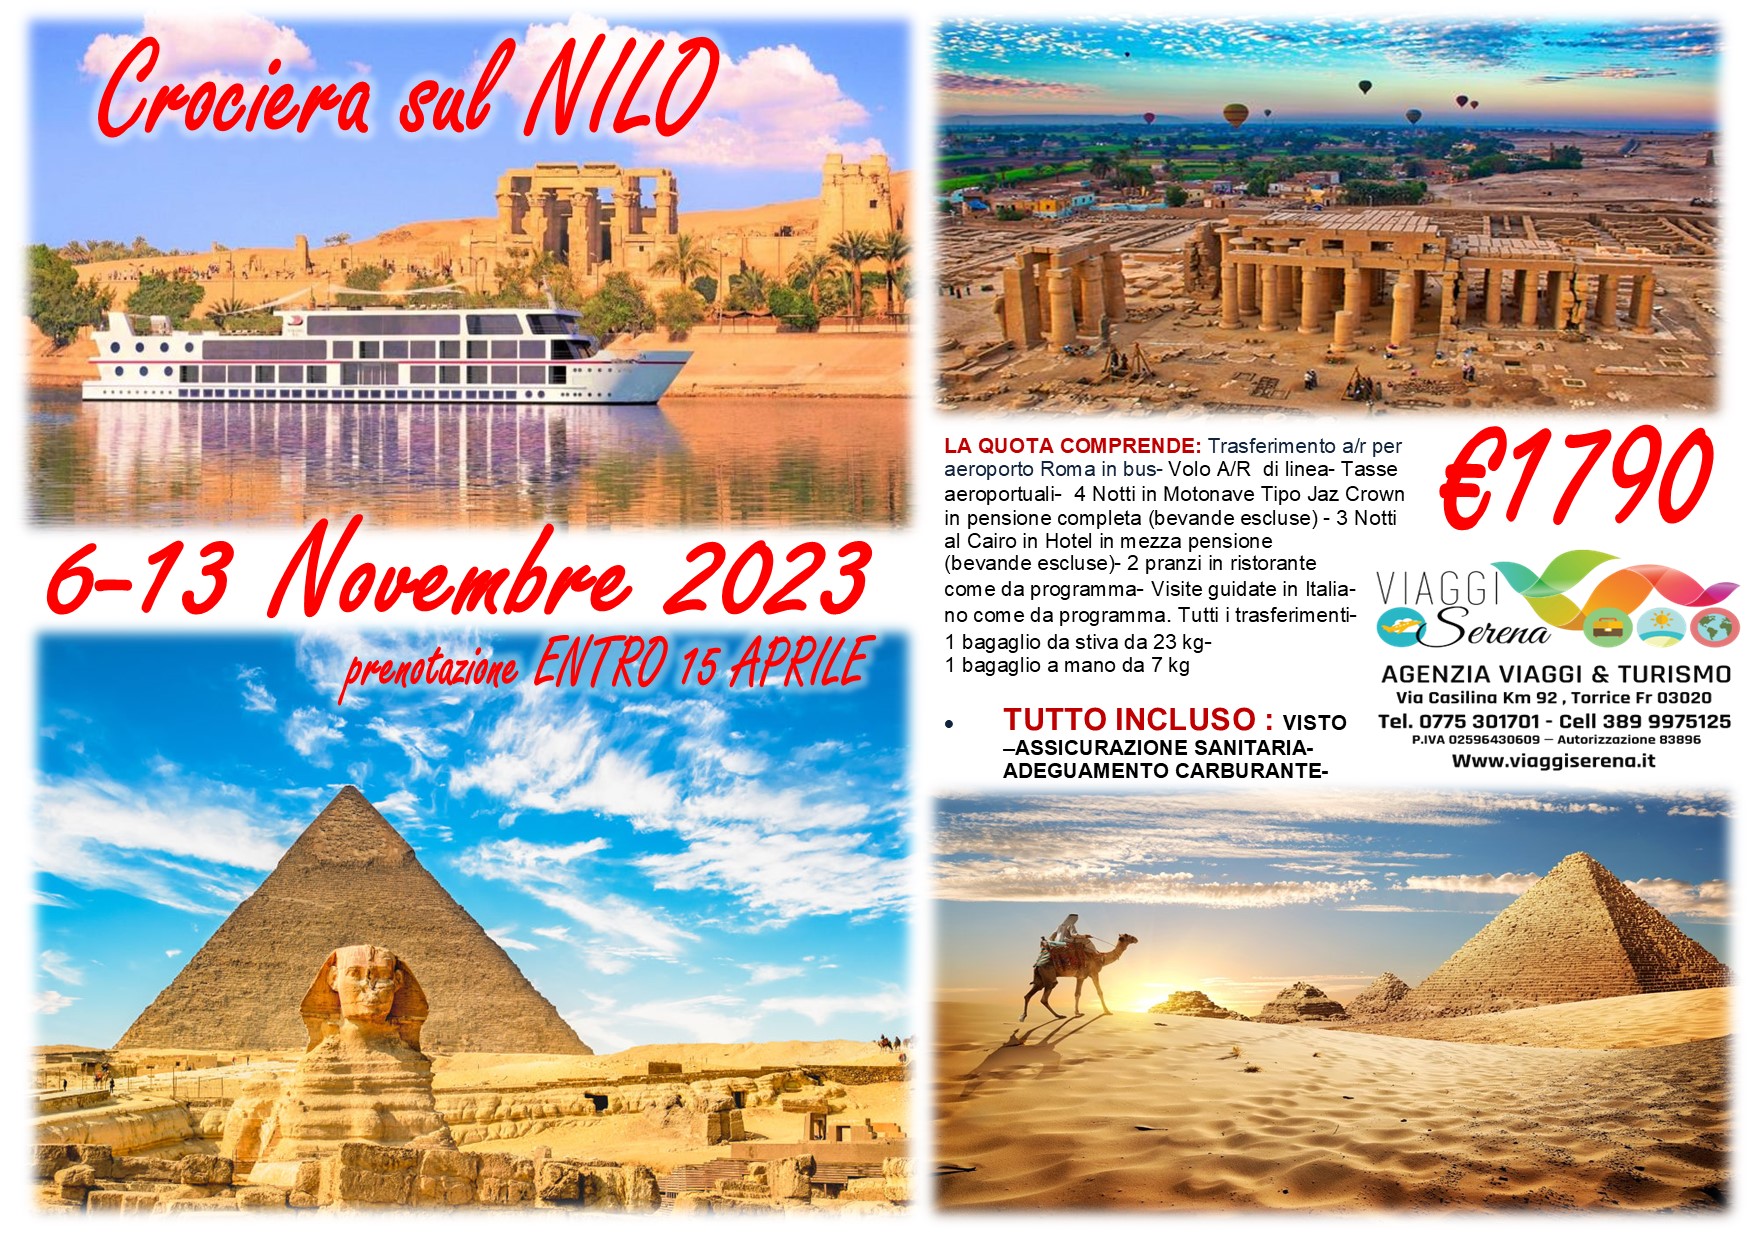 Viaggi di gruppo: Crociera sul NILO 6-13 Novembre 2023 €1790,00